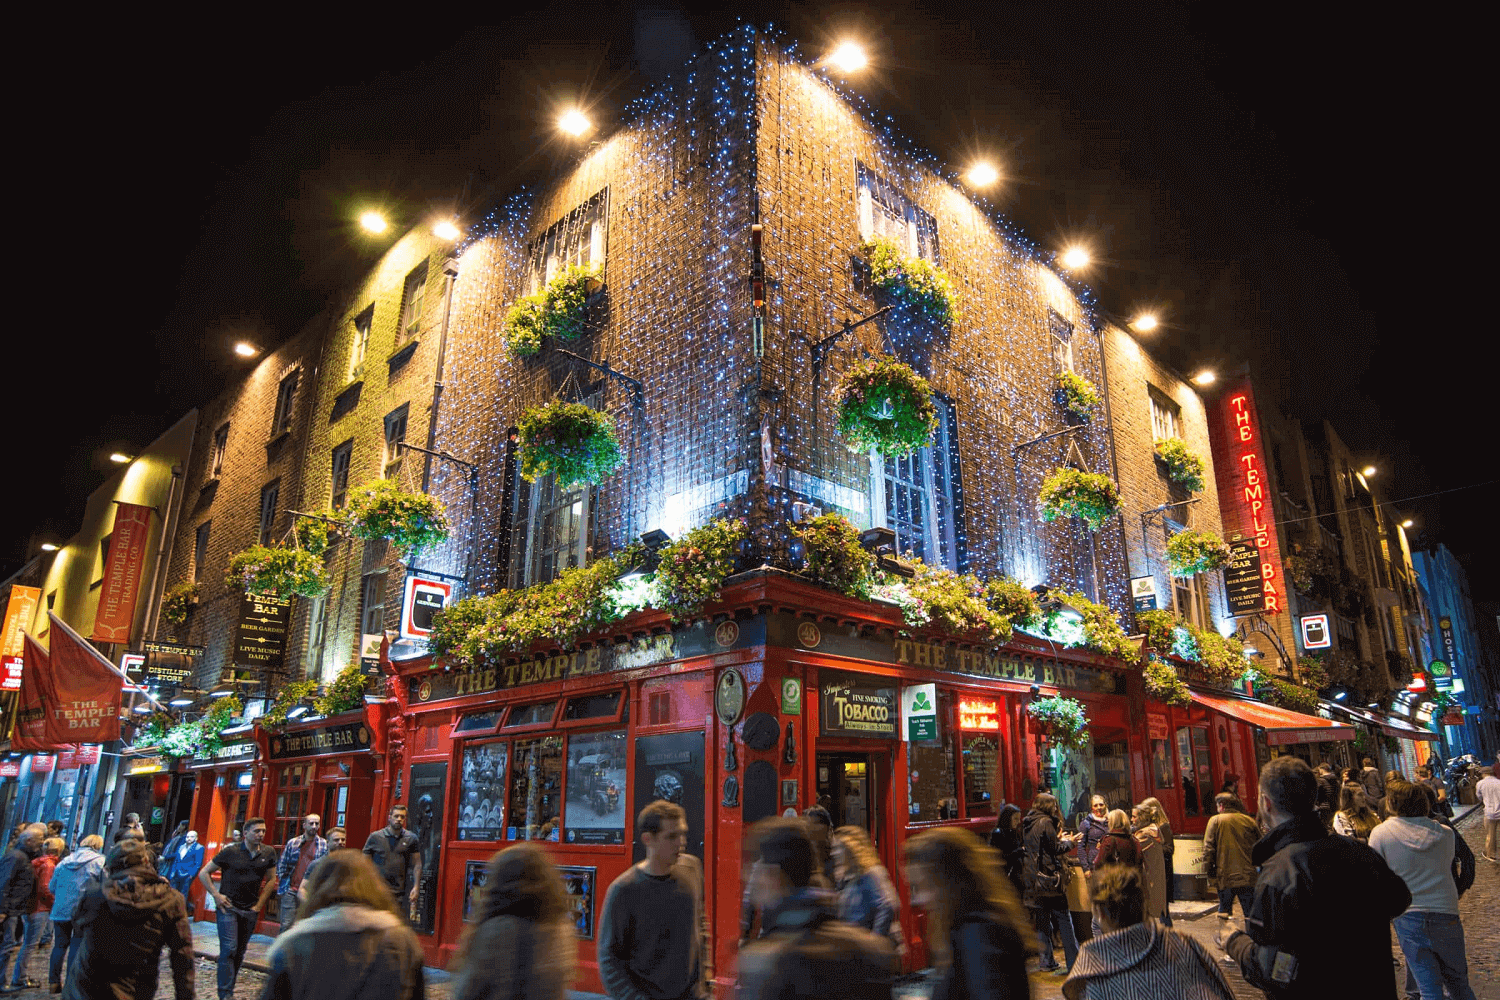 The Temple Bar, um dos principais pontos turísticos da Irlanda